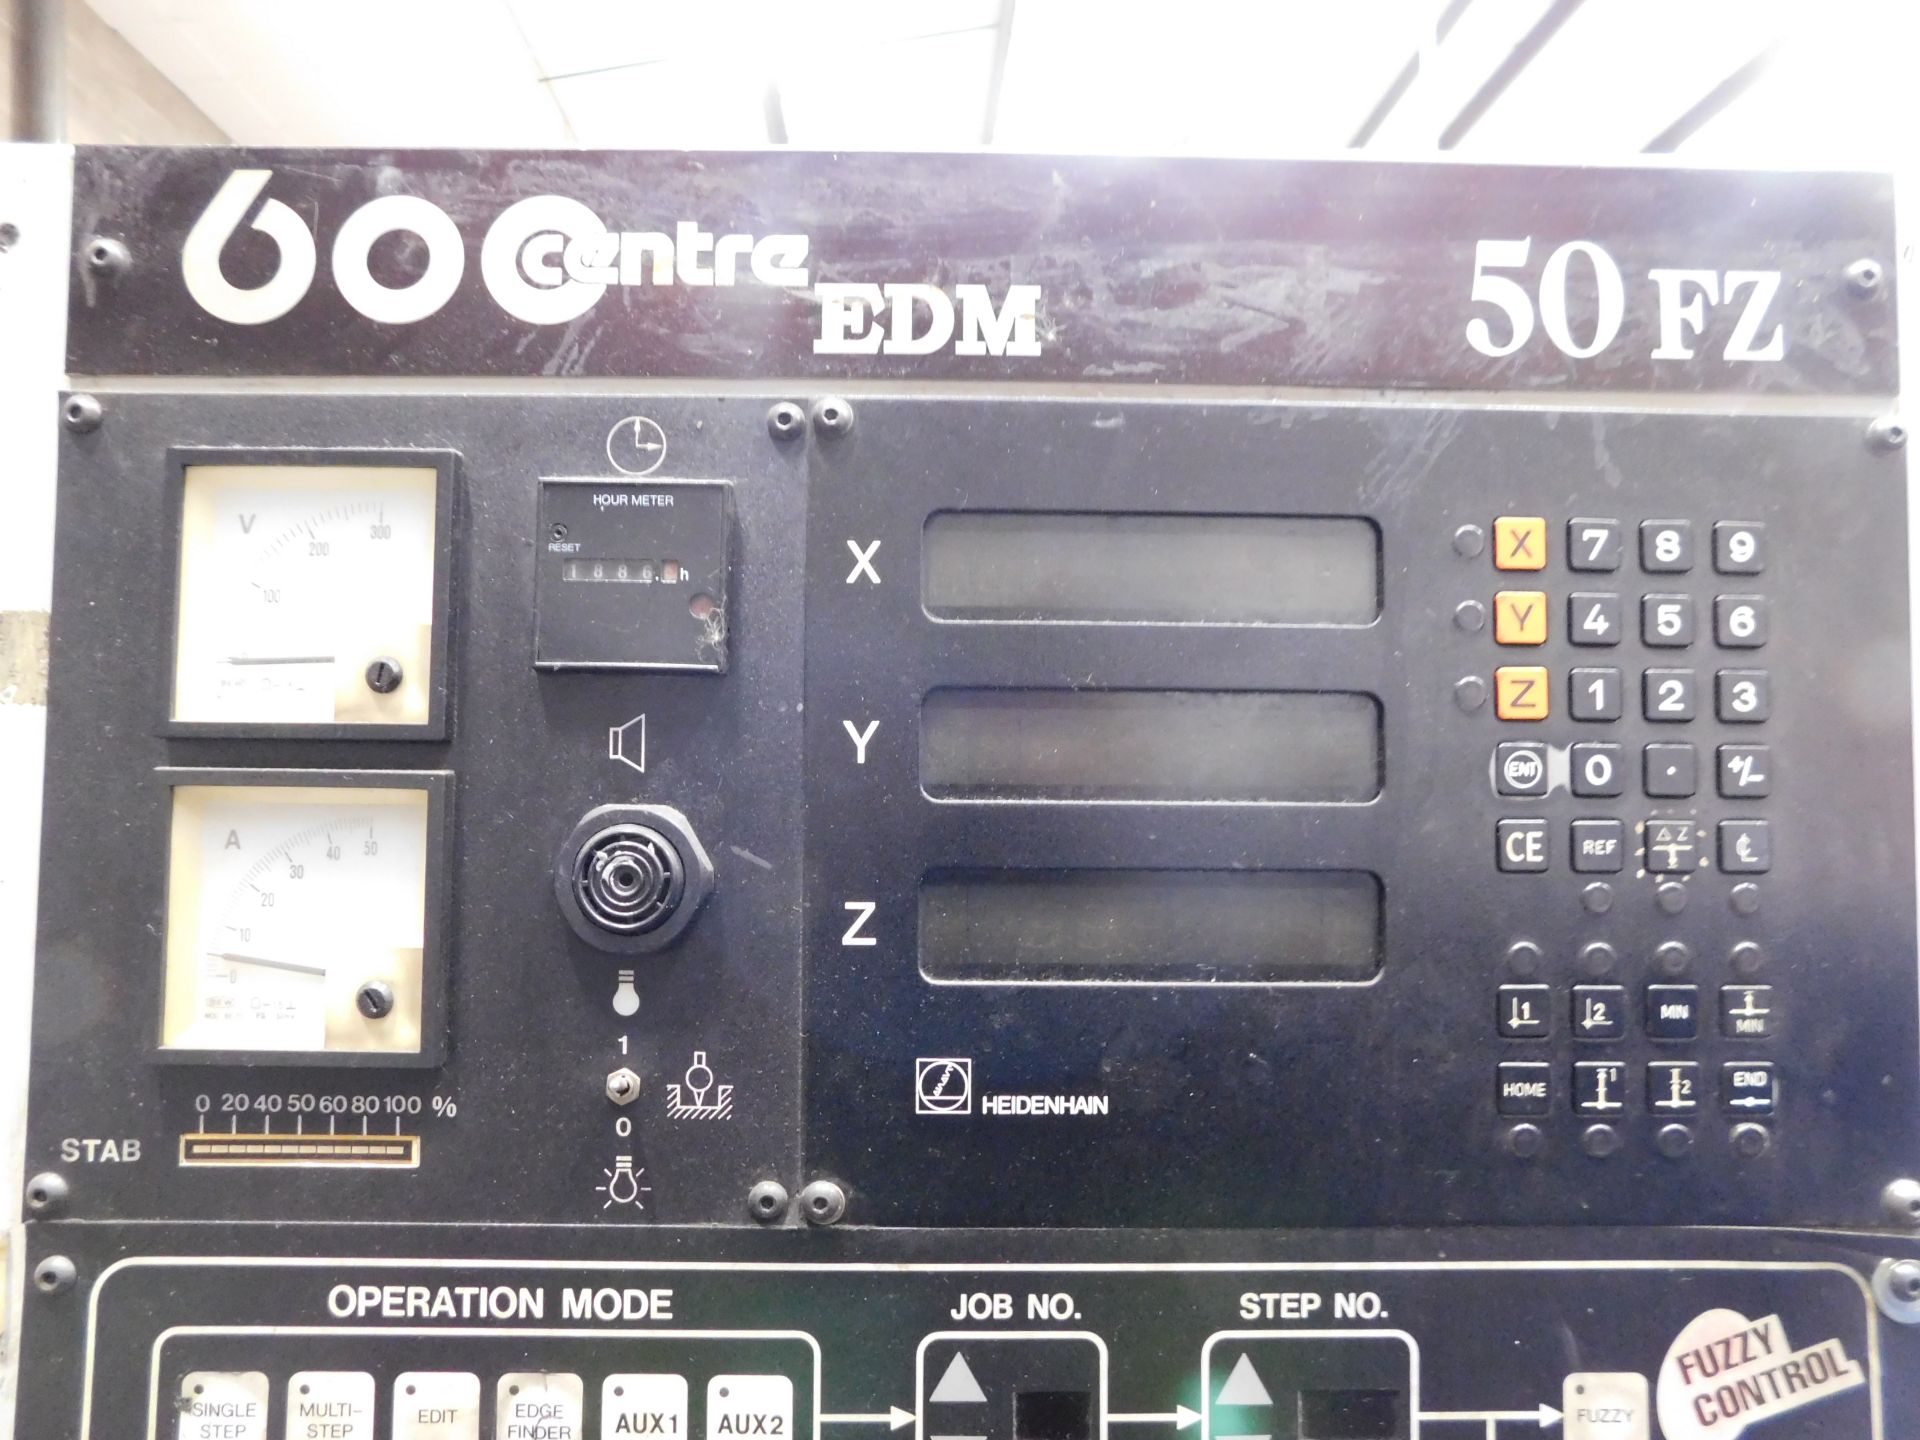 Joemars EDM 600 Centre Manual Spark Eroding Machine, Model Number JM430, Serial Number 9072827 ( - Image 15 of 21